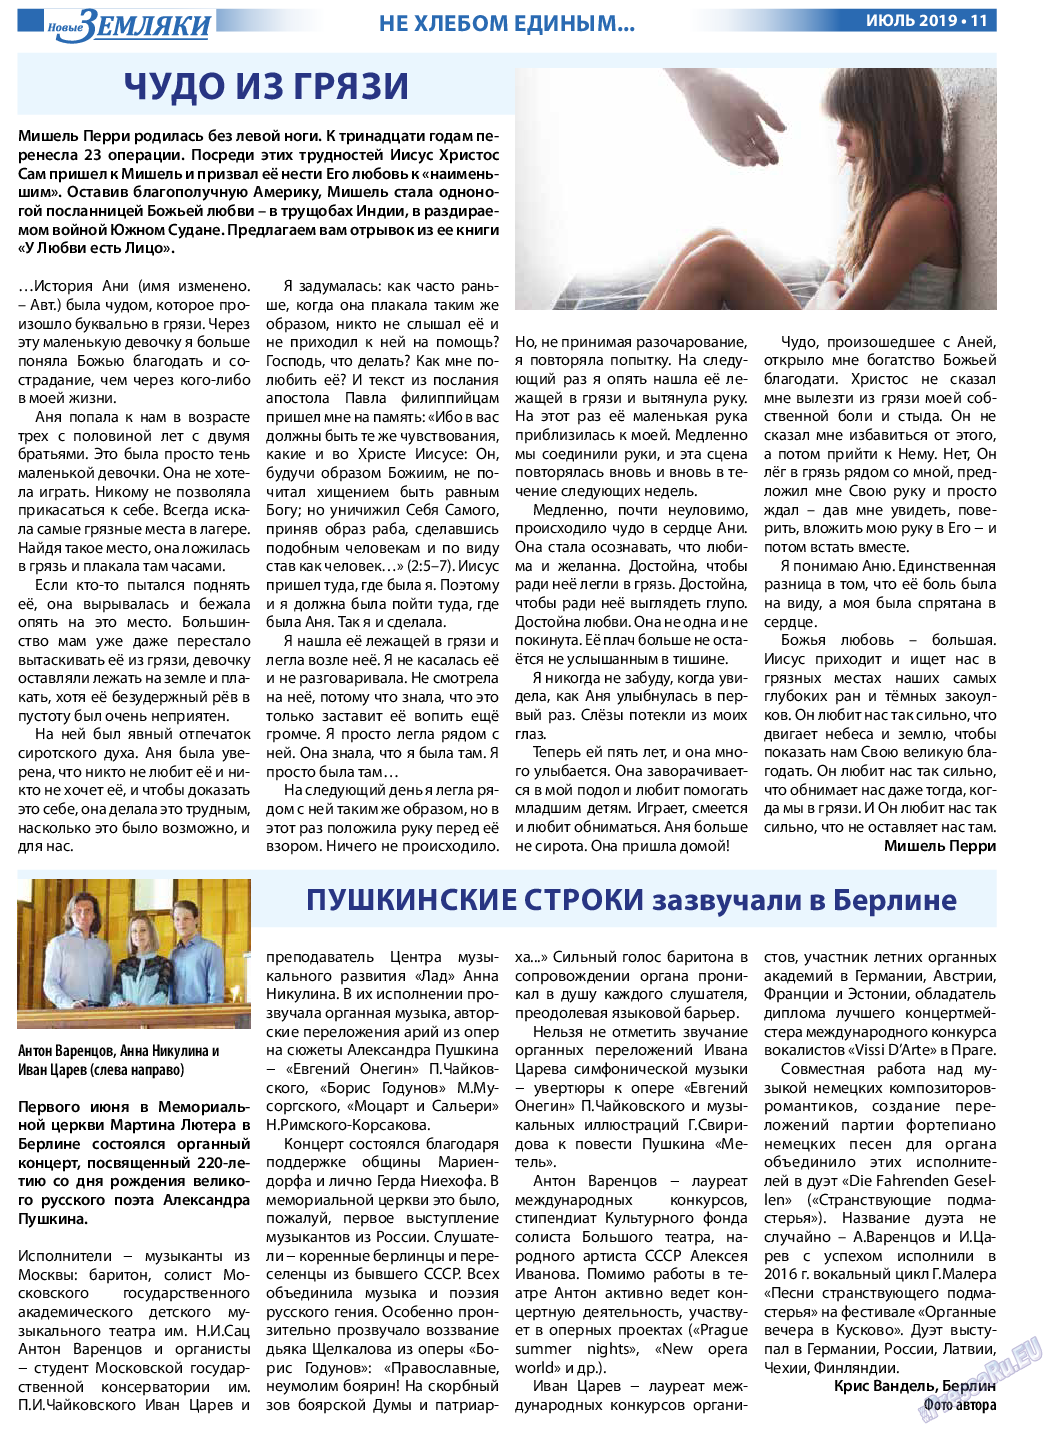 Новые Земляки (газета). 2019 год, номер 7, стр. 11